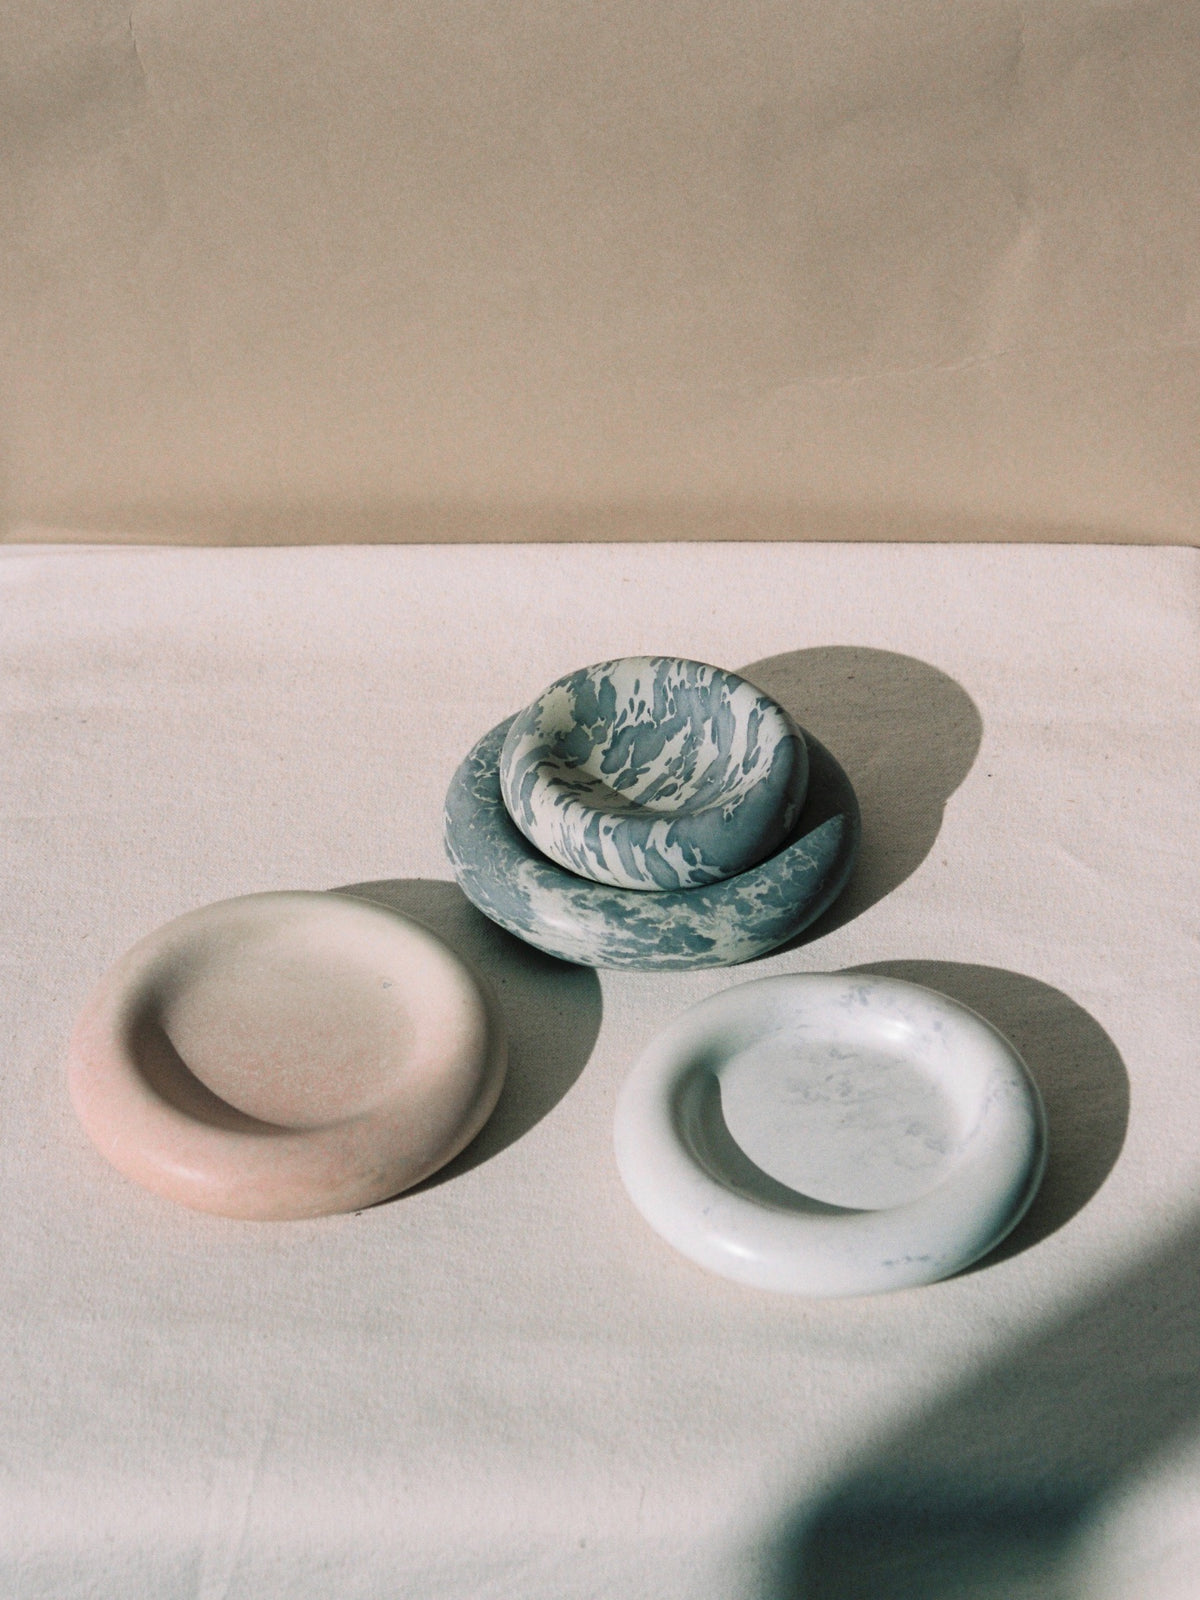 Three Stacker Round Trays – Malachite by Asili on a white table.